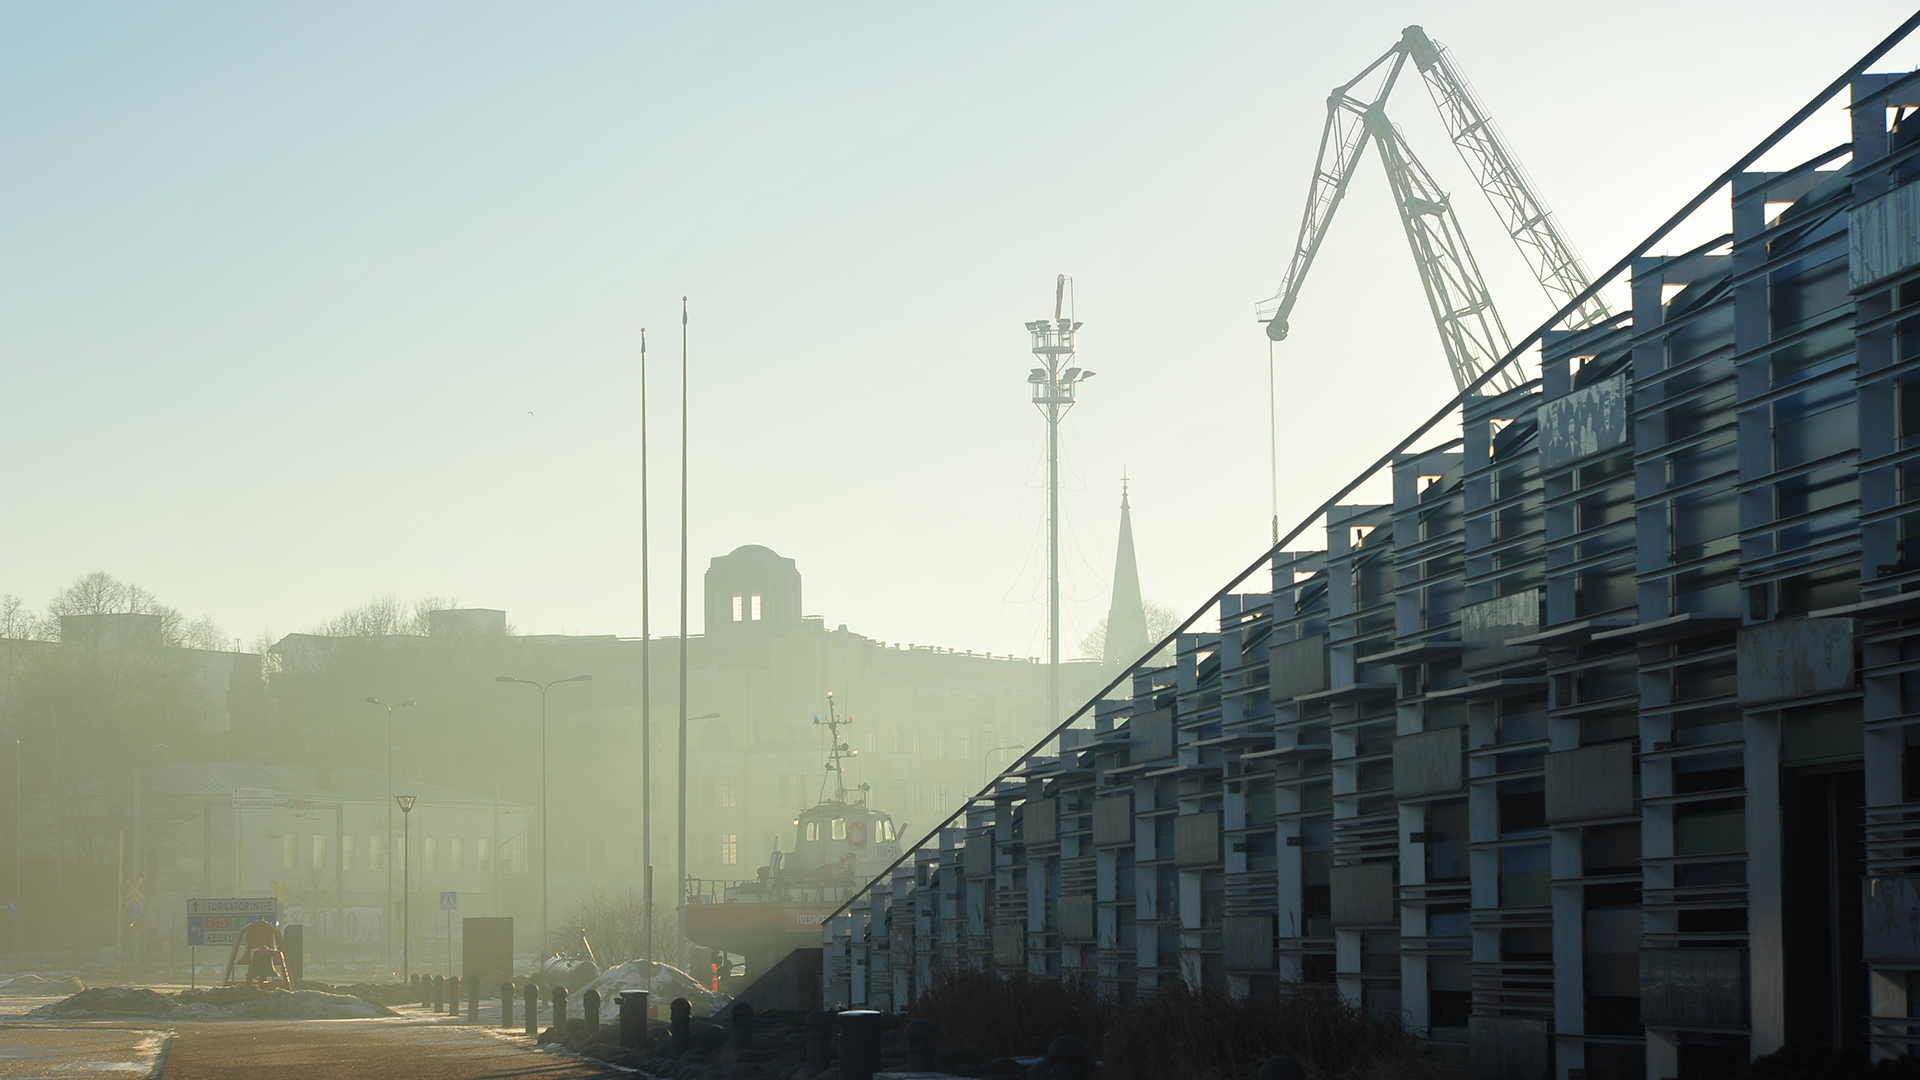 Kuvan oikean reunan peittää diagonaalisesti Vellamon rakennus, jonka takaa pilkistää satamanosturi. Taustamaisema jää usvaiseksi.